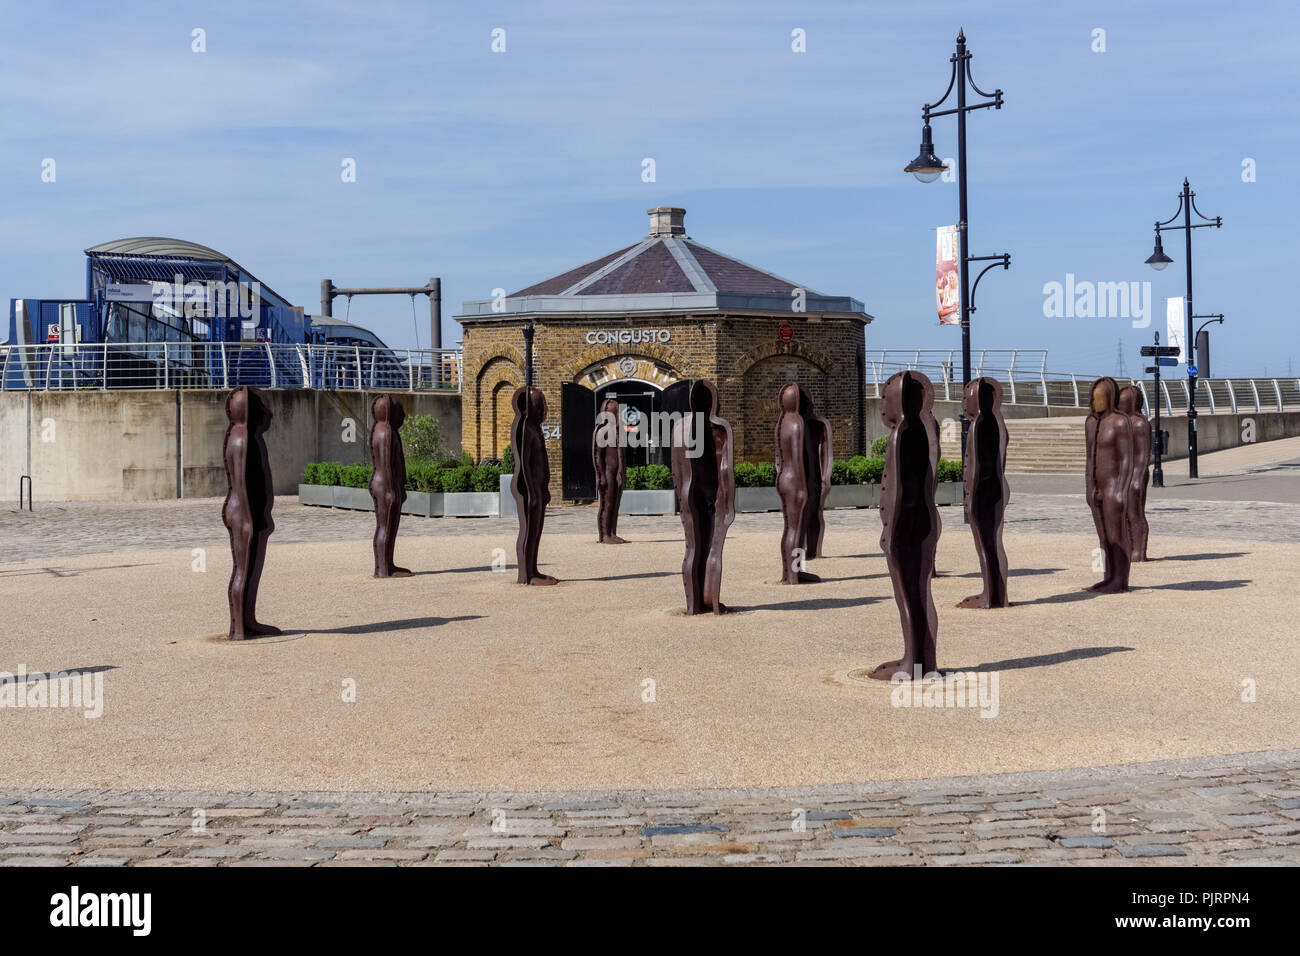 L'Assemblée Sculpture par Peter Burke, par l'entrée de Woolwich Arsenal Pier, Londres Angleterre Royaume-Uni UK Banque D'Images